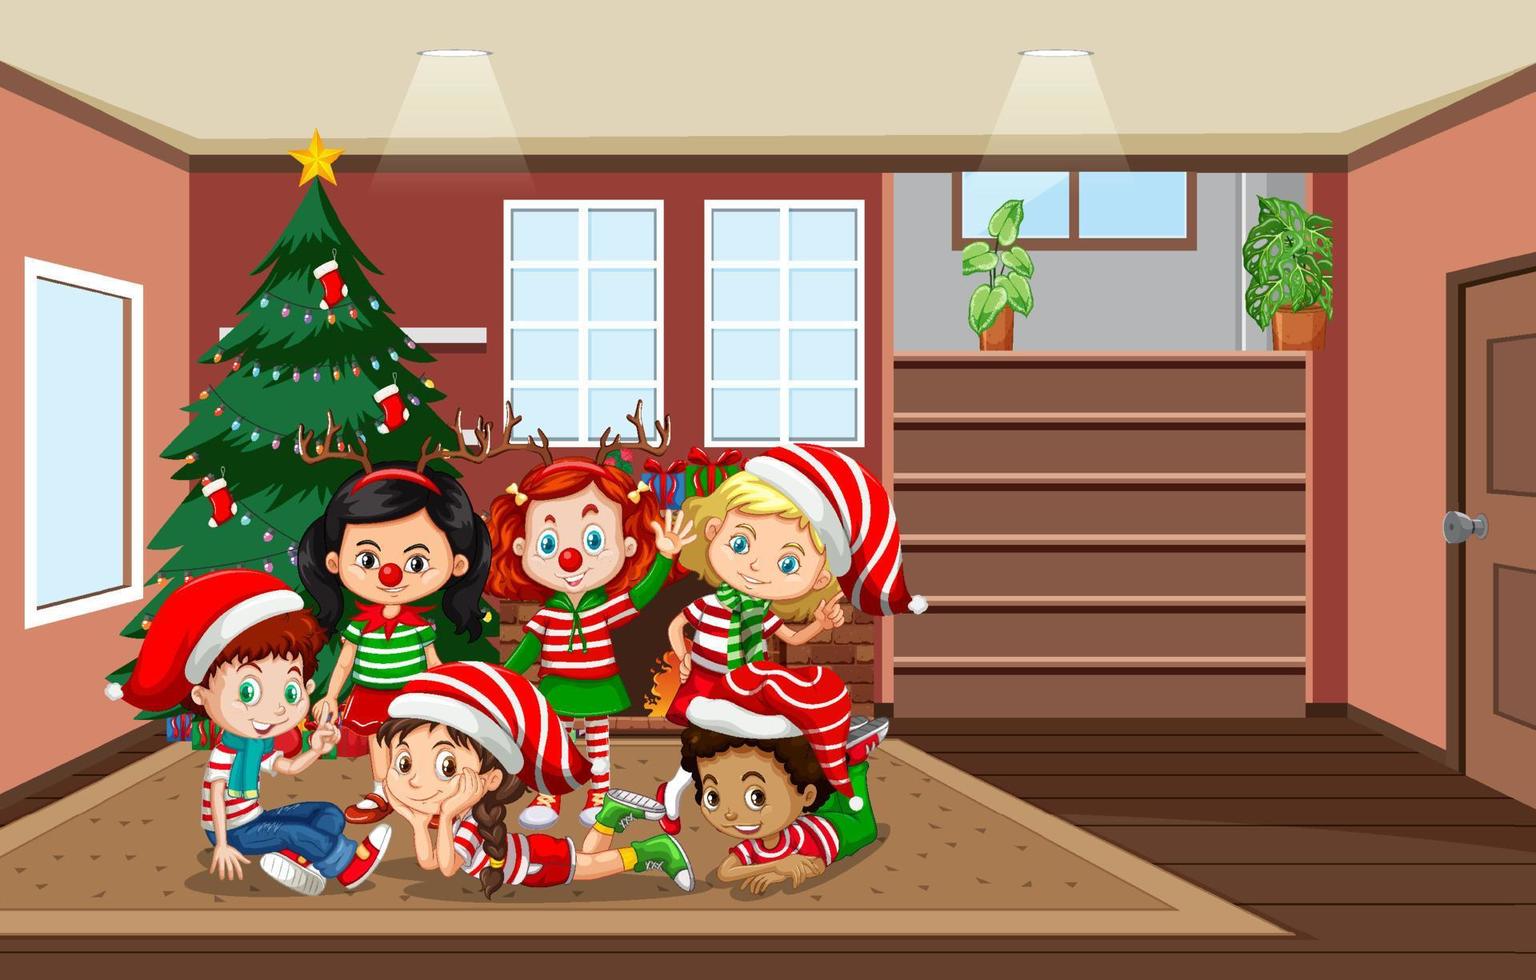 escena de la habitación con niños celebrando la navidad vector